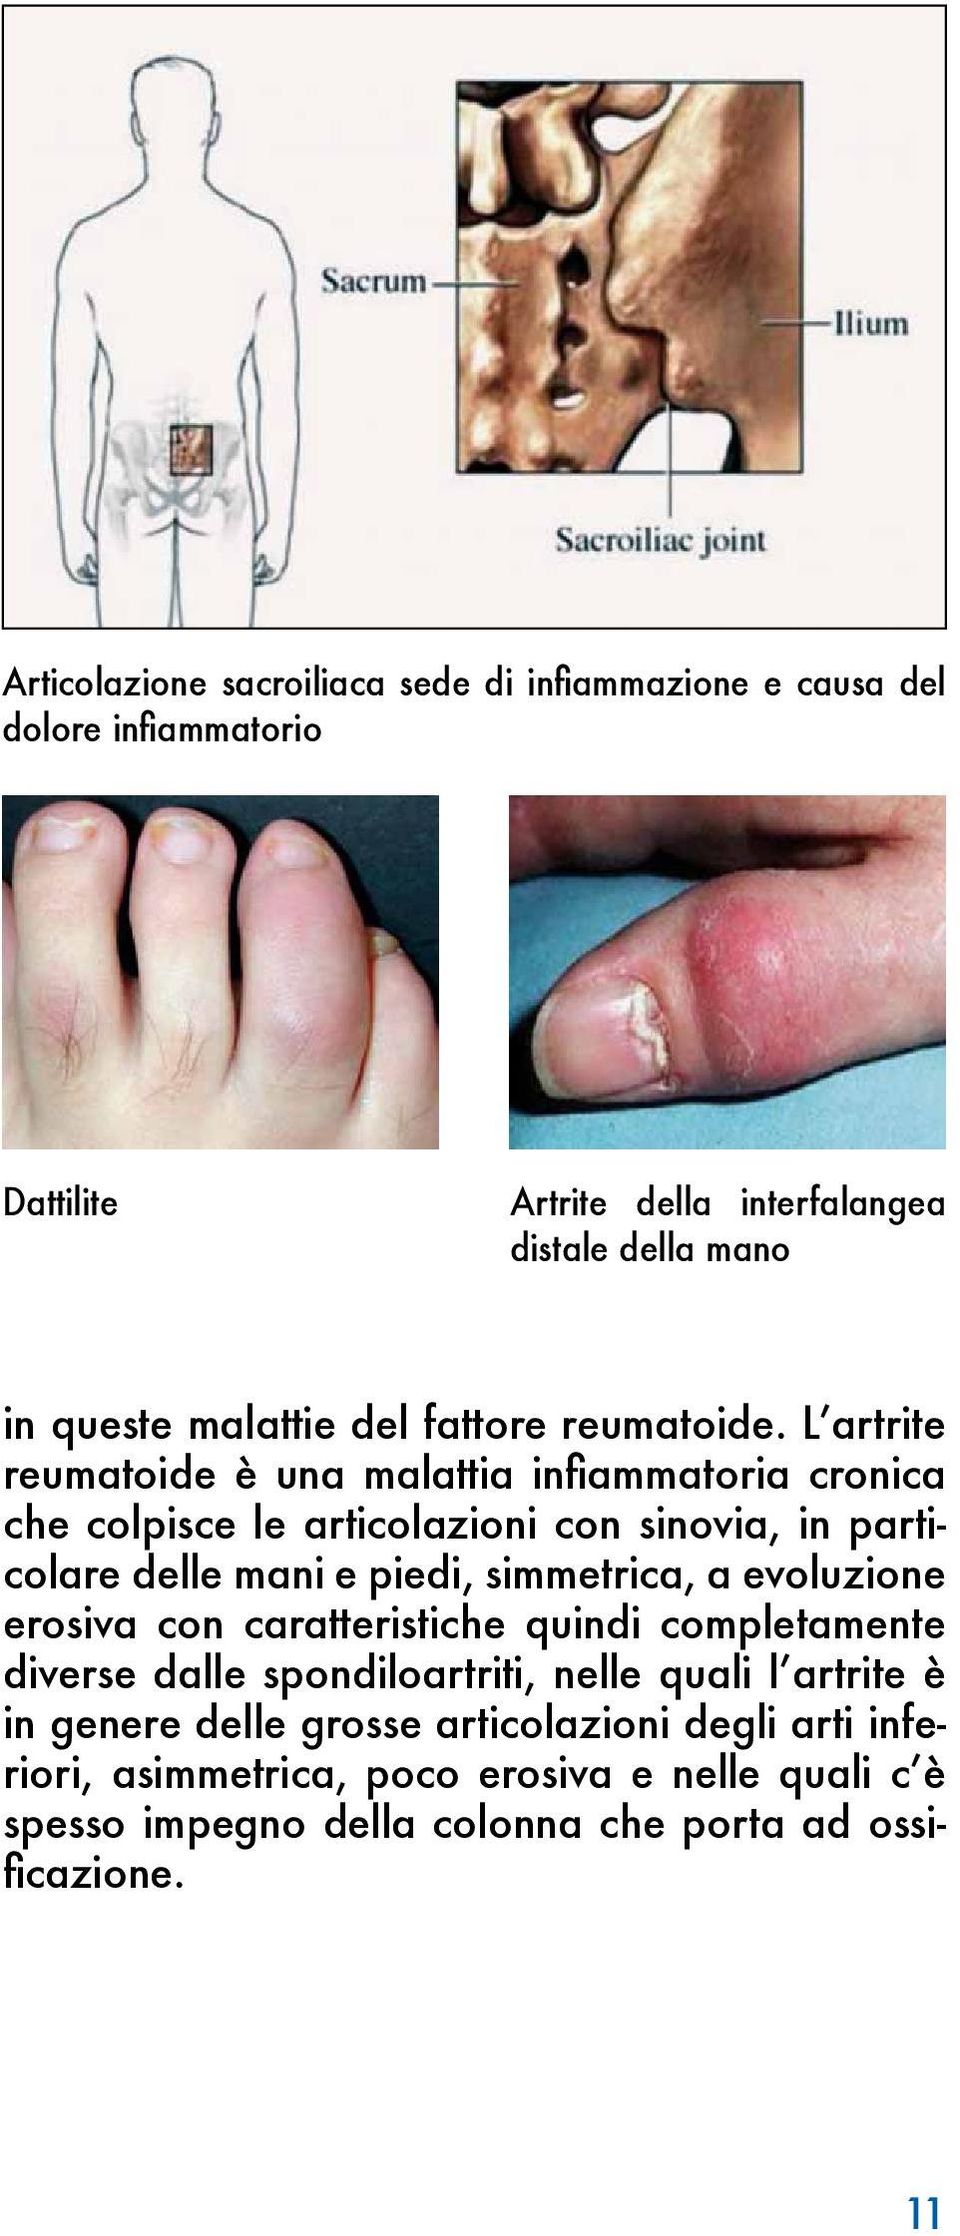 L artrite reumatoide è una malattia infiammatoria cronica che colpisce le articolazioni con sinovia, in particolare delle mani e piedi, simmetrica, a